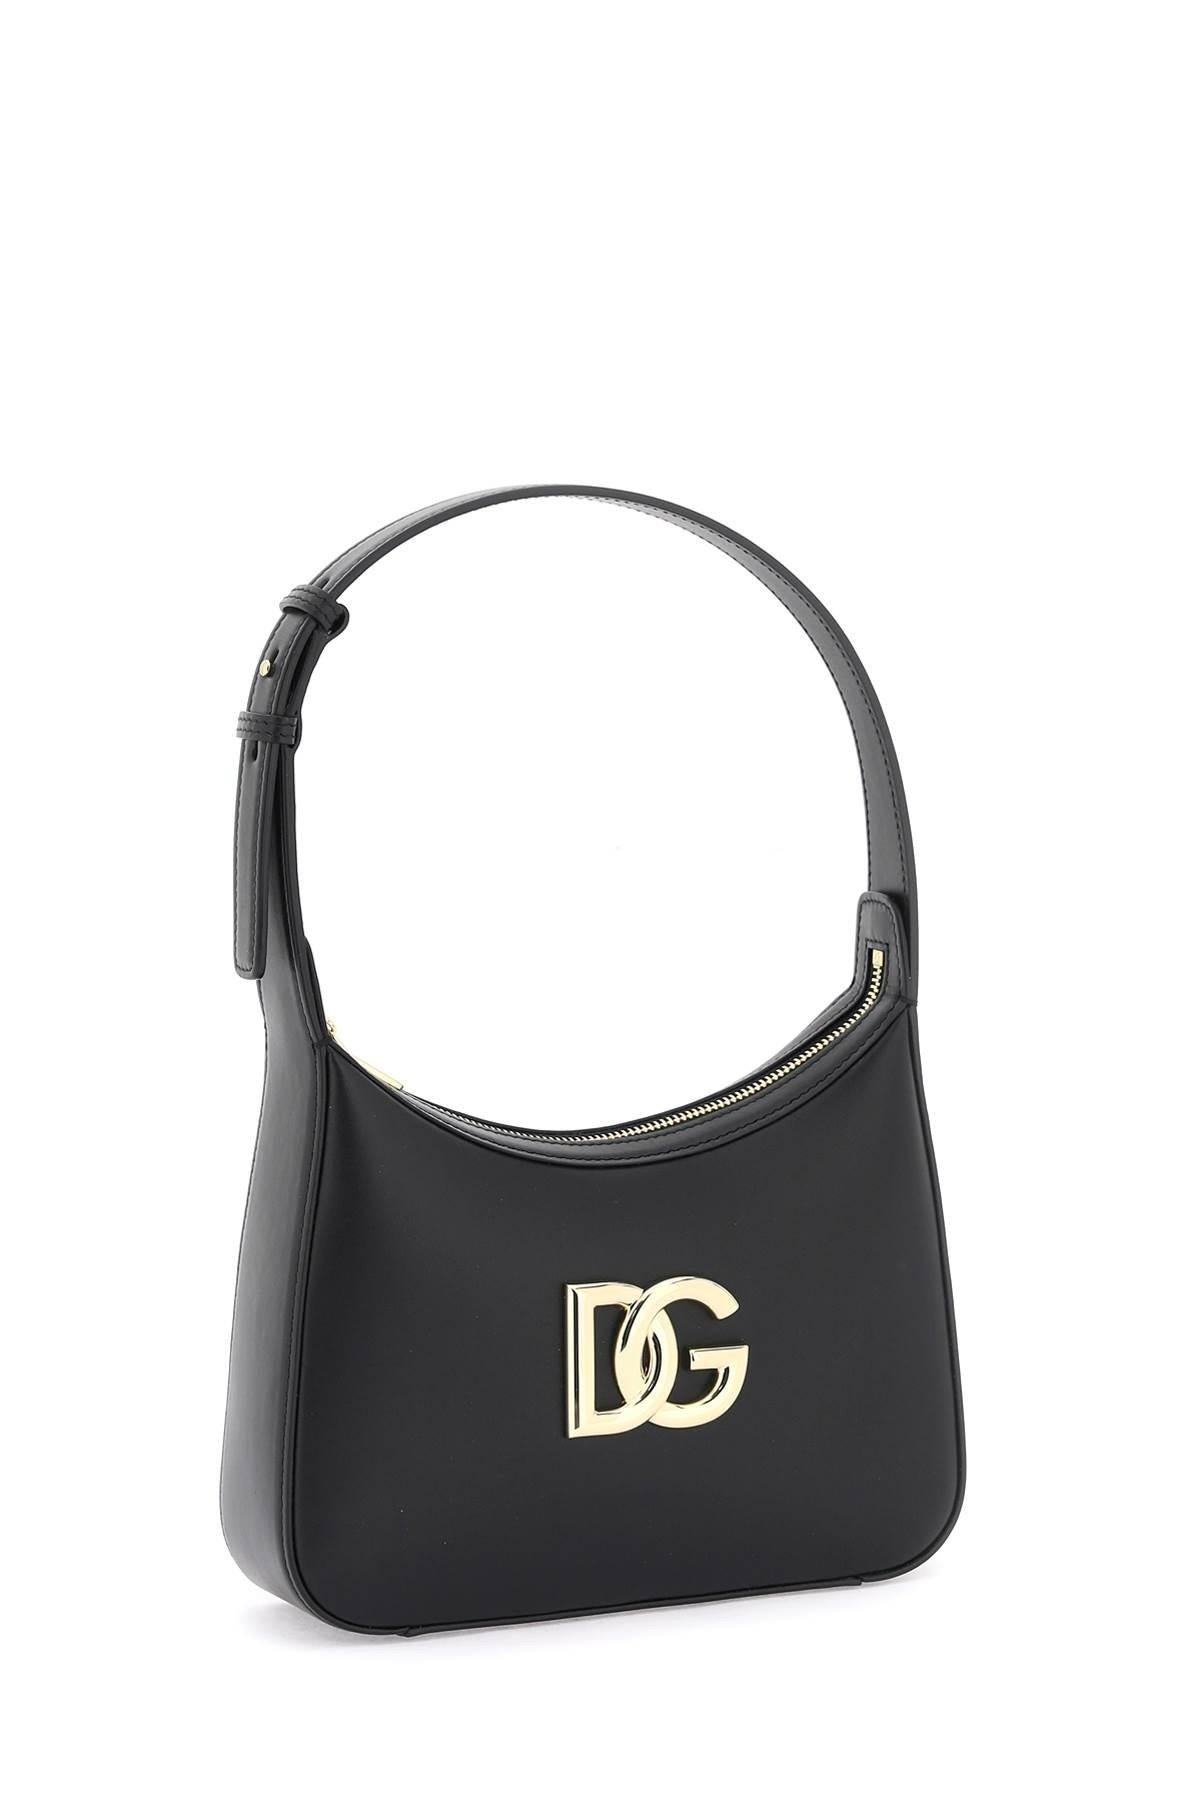 Dolce & Gabbana 3.5 Shoulder Bag - 3